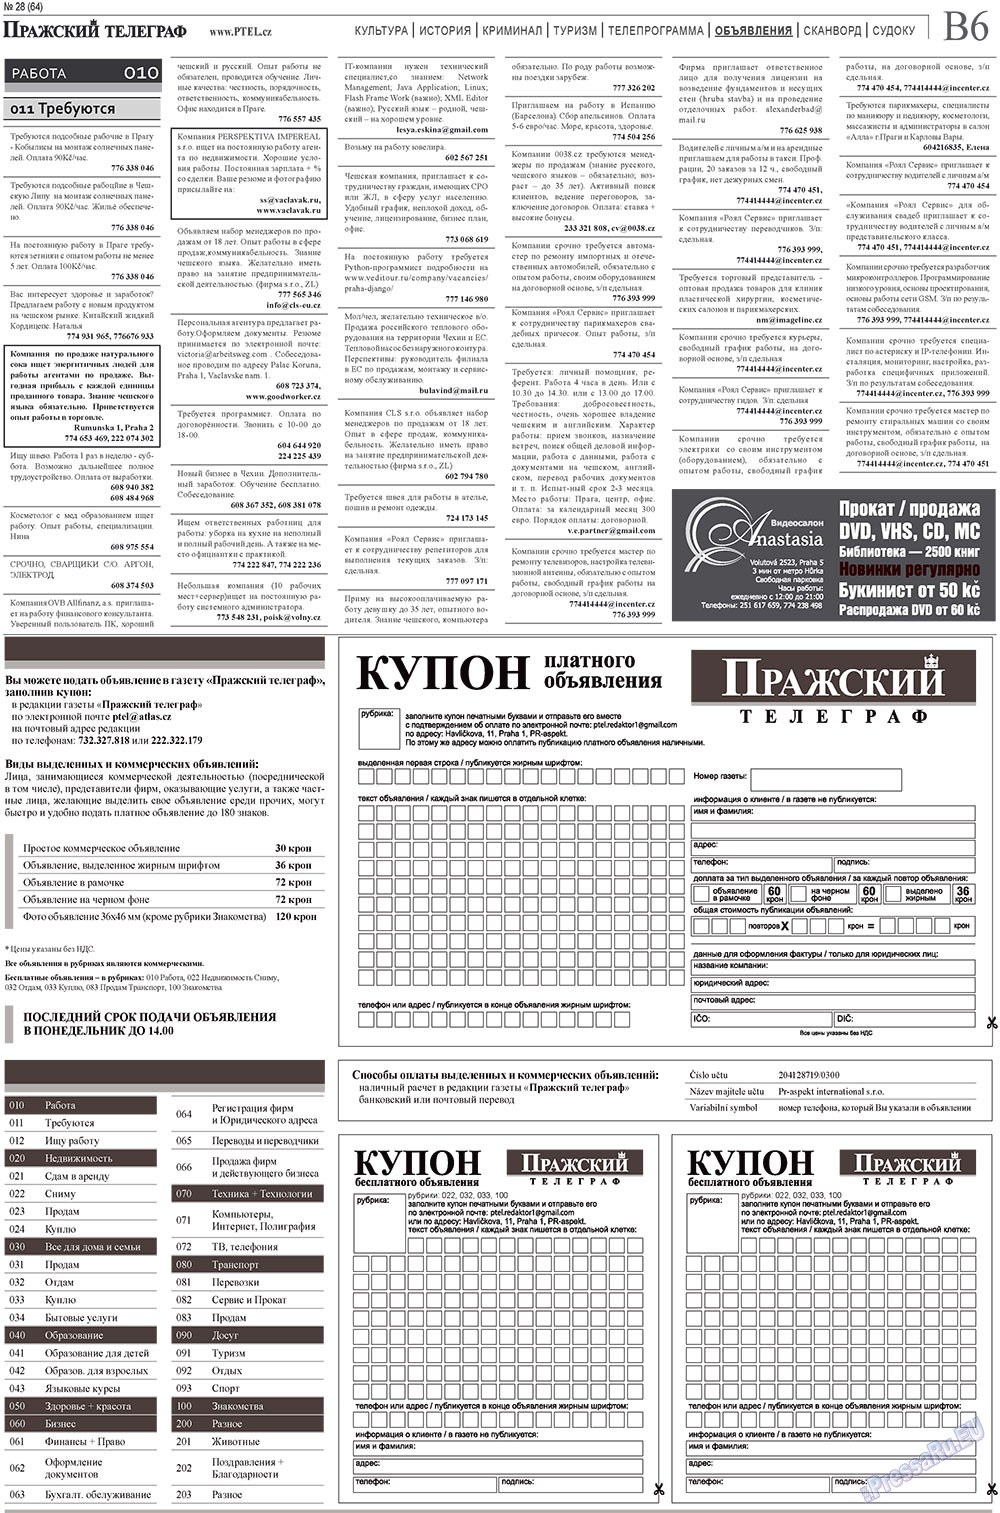 Пражский телеграф (газета). 2010 год, номер 29, стр. 14